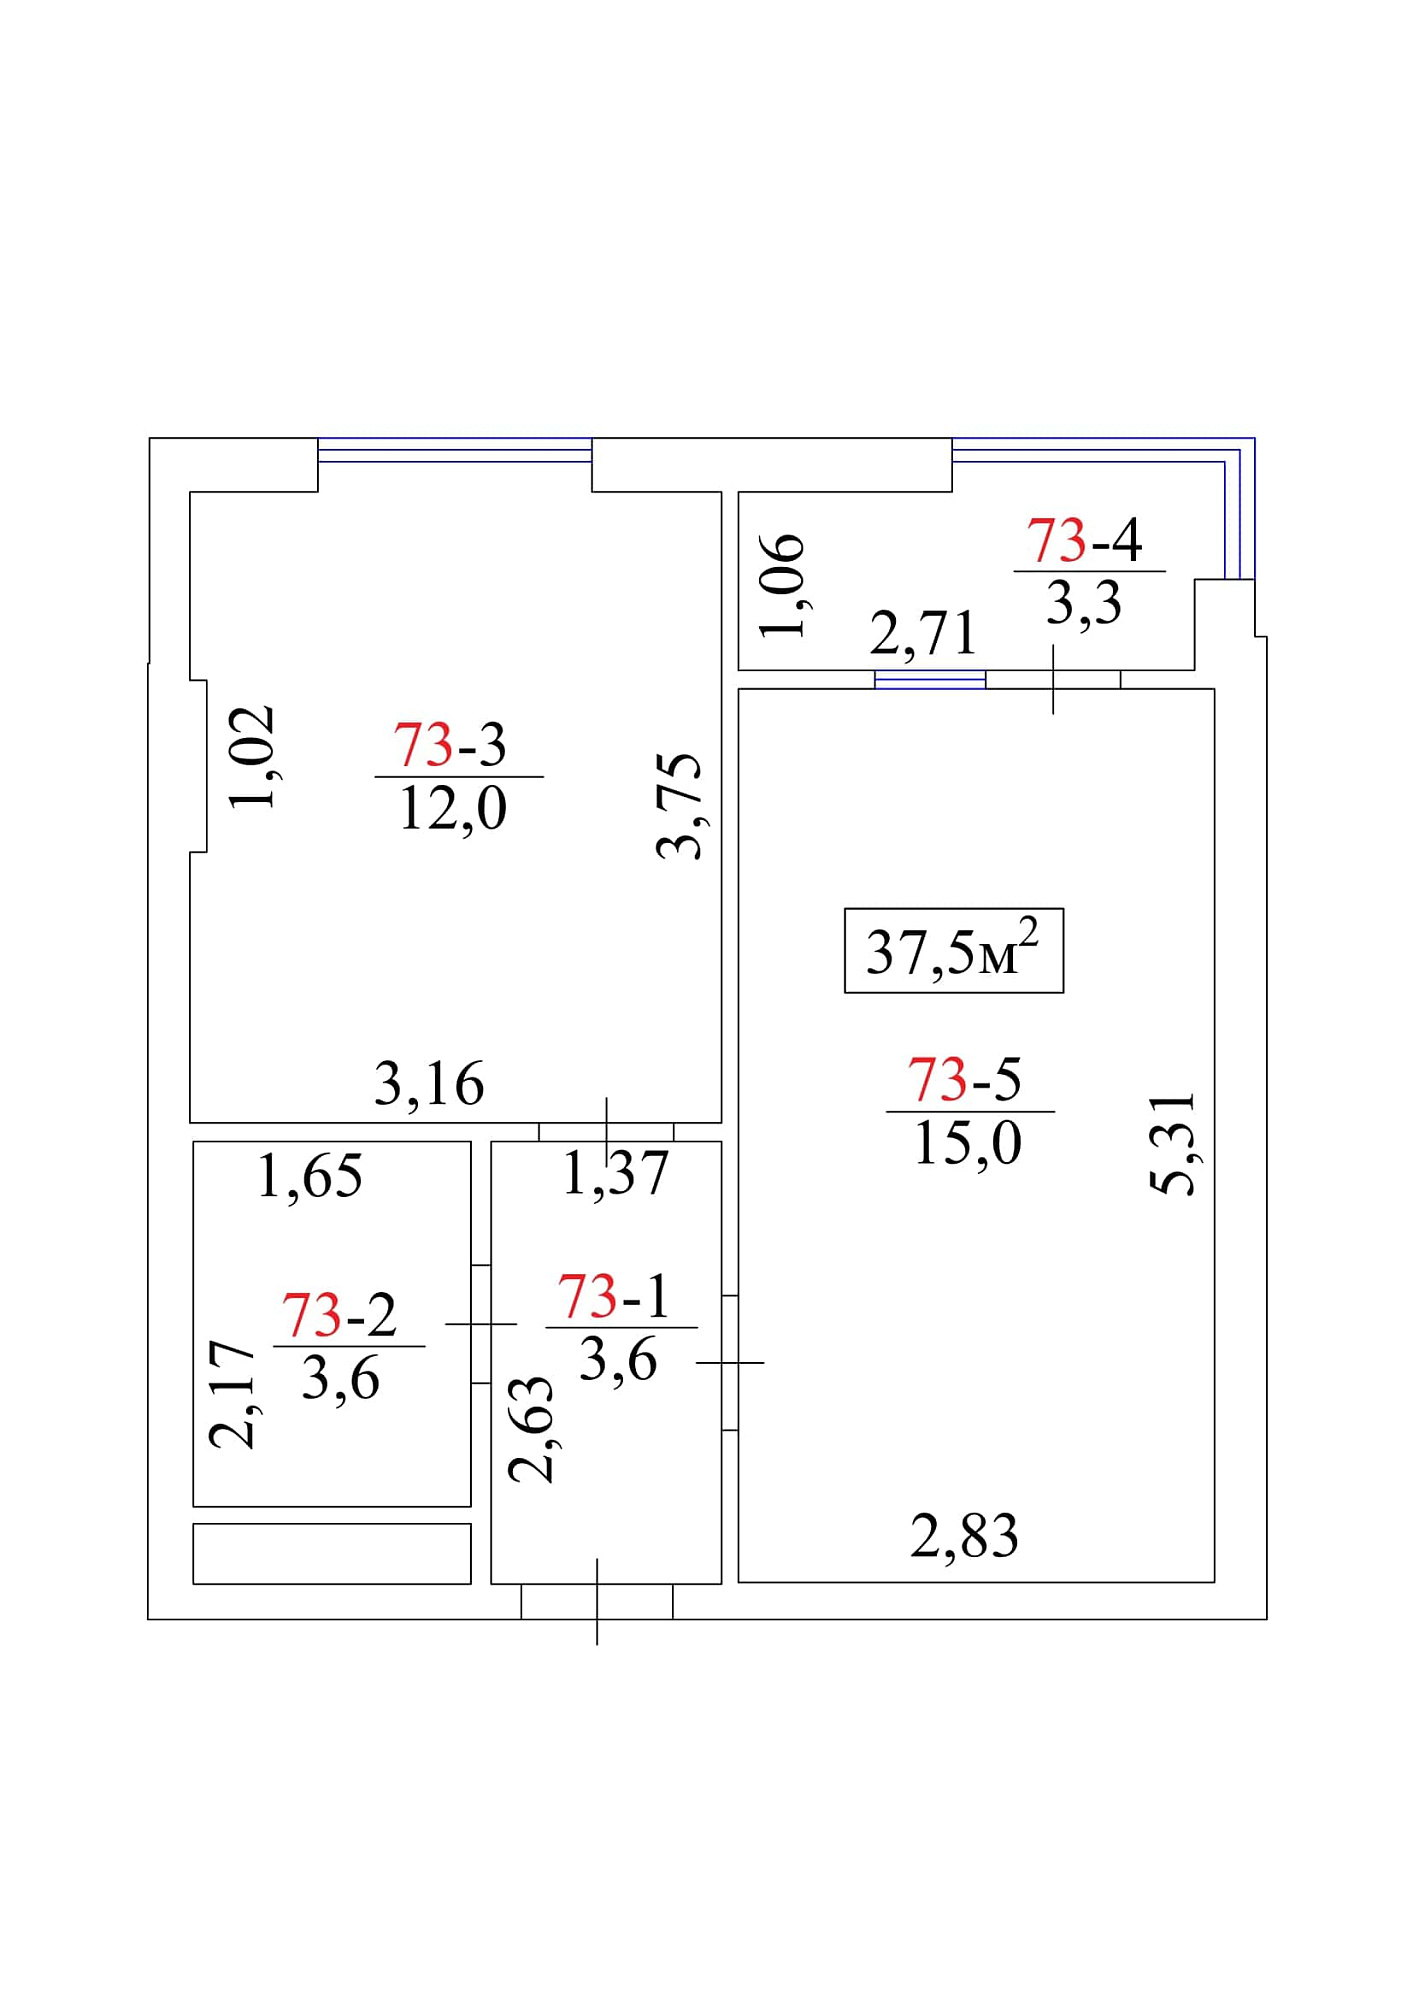 Планировка 1-к квартира площей 37.5м2, AB-01-08/0069а.